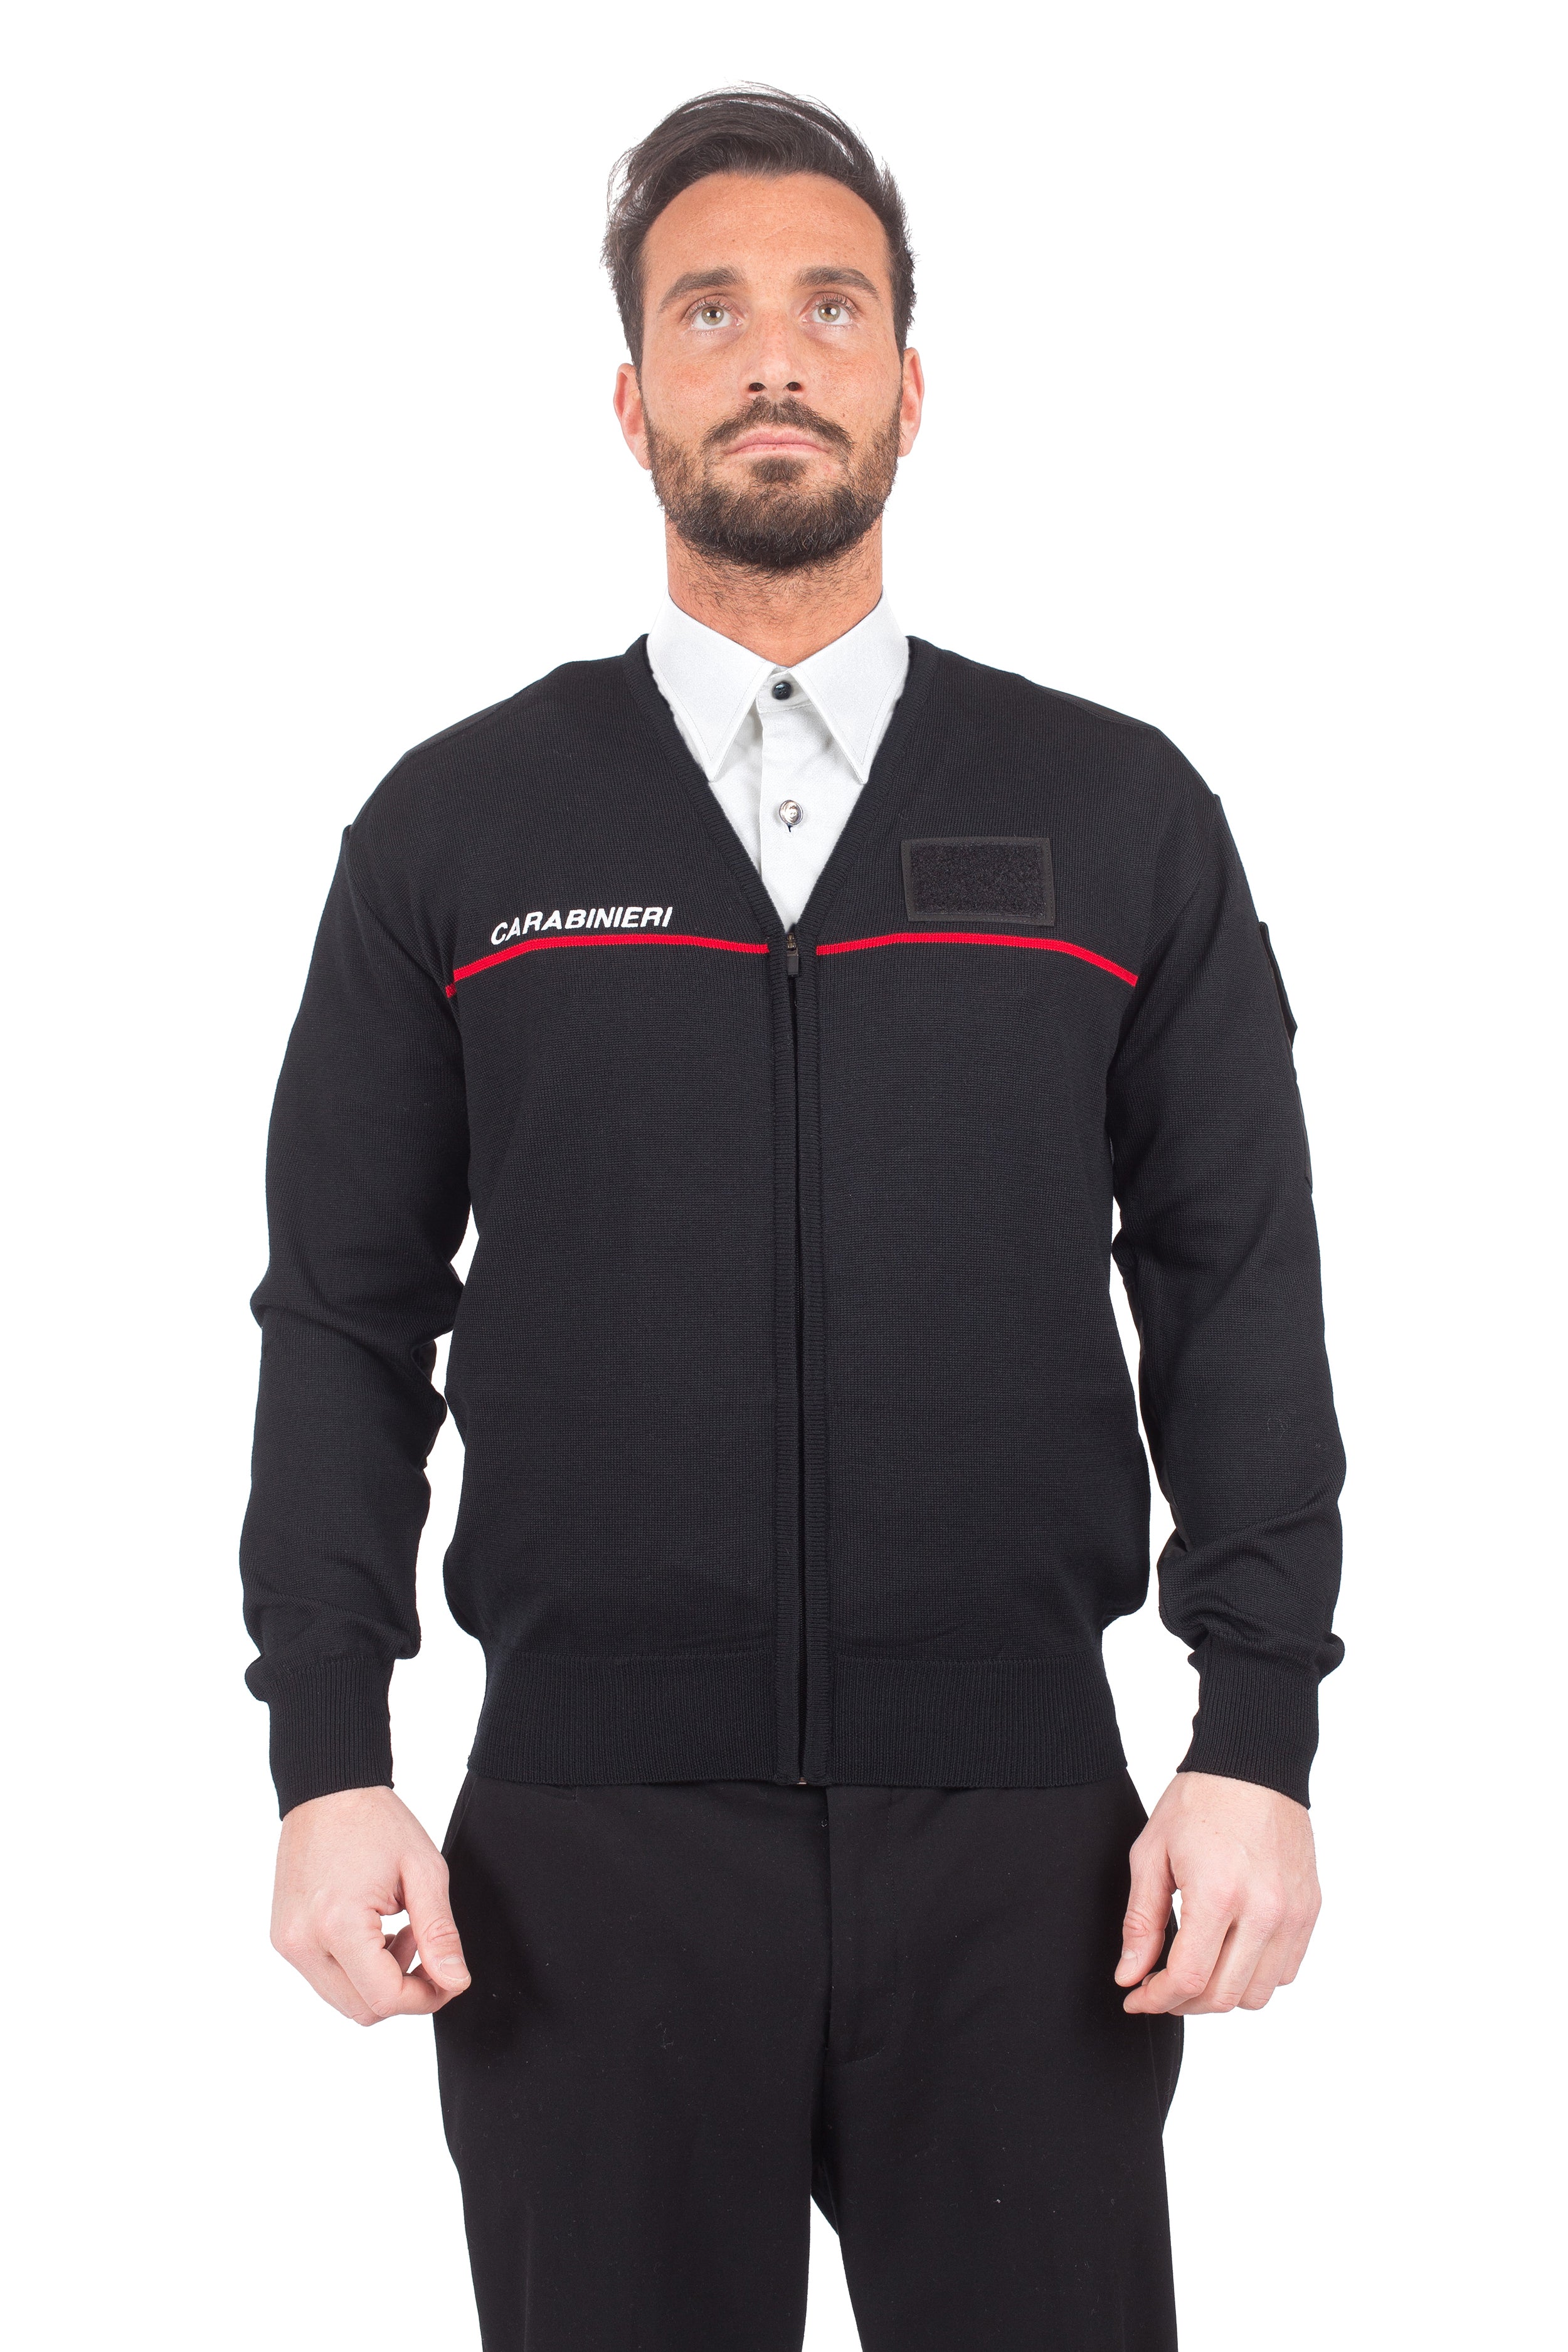 Carabinieri Zip Sweater